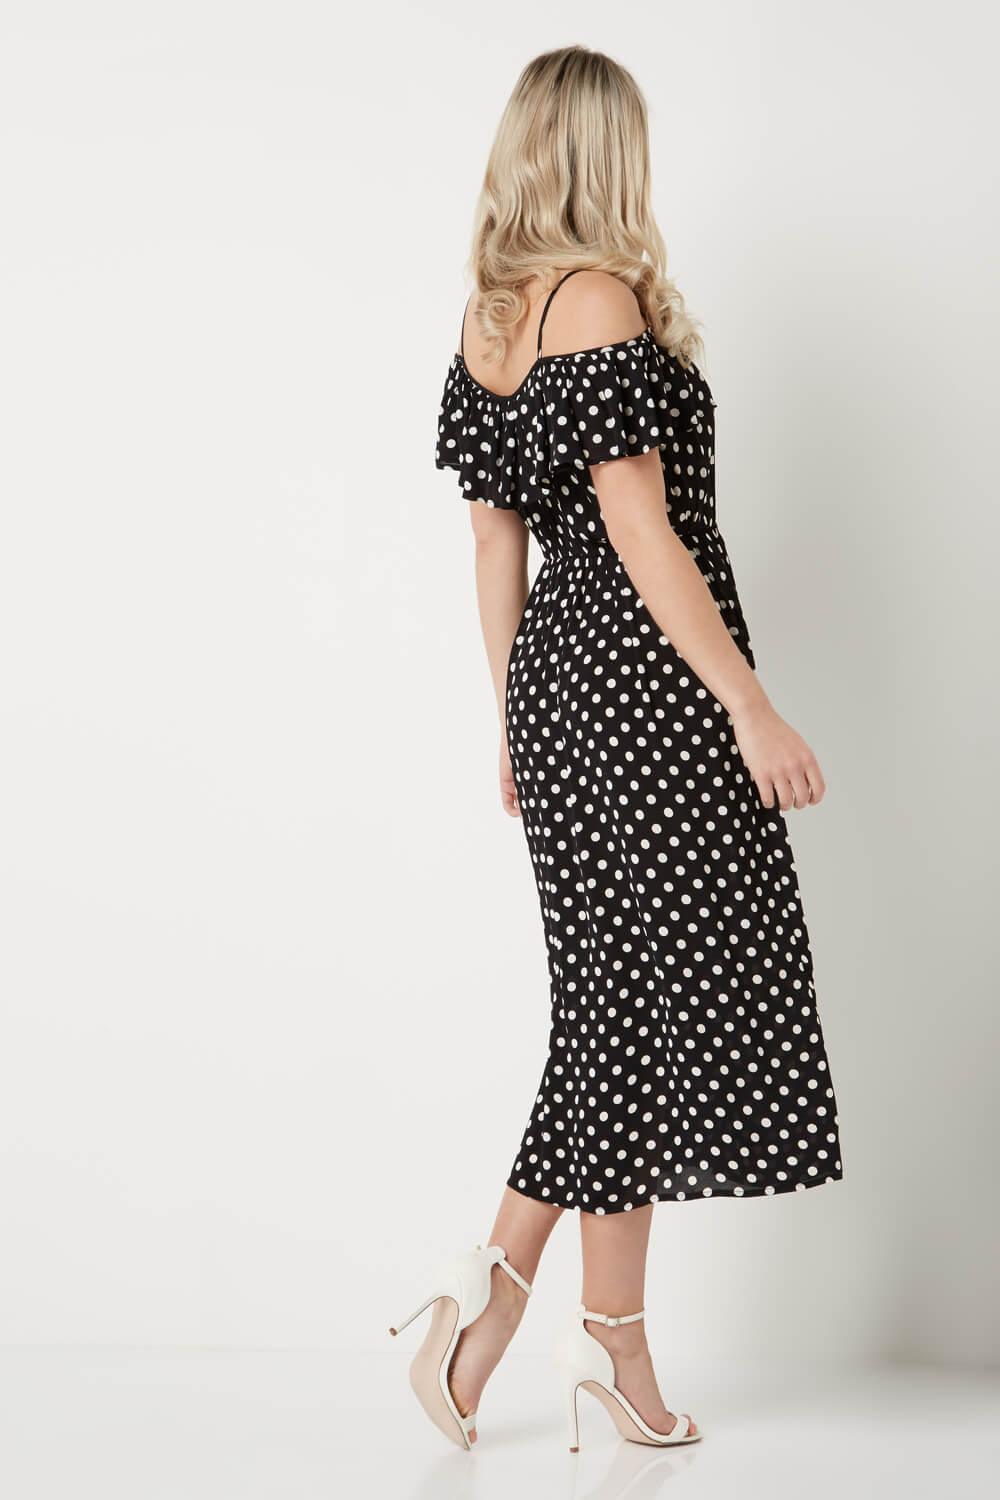 Black Polka Dot Cold Shoulder Dress, Image 2 of 4